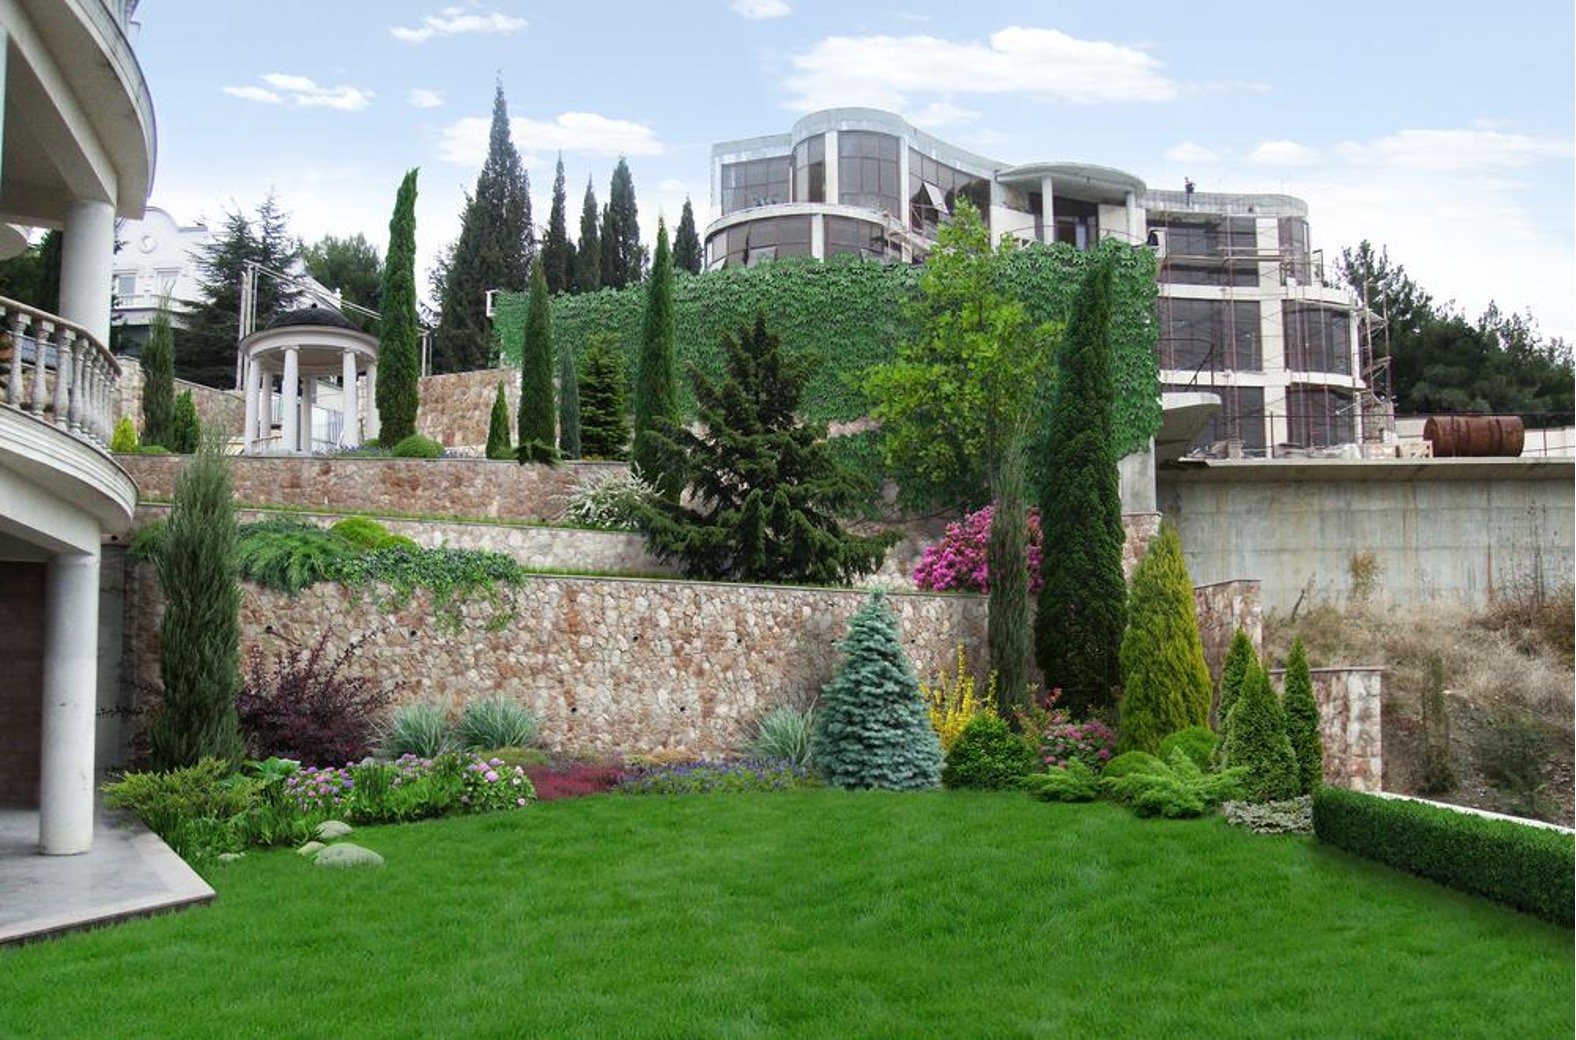 5 Landscaping Tips for Your Hillside Home Garden - outdoors, landscape, garden